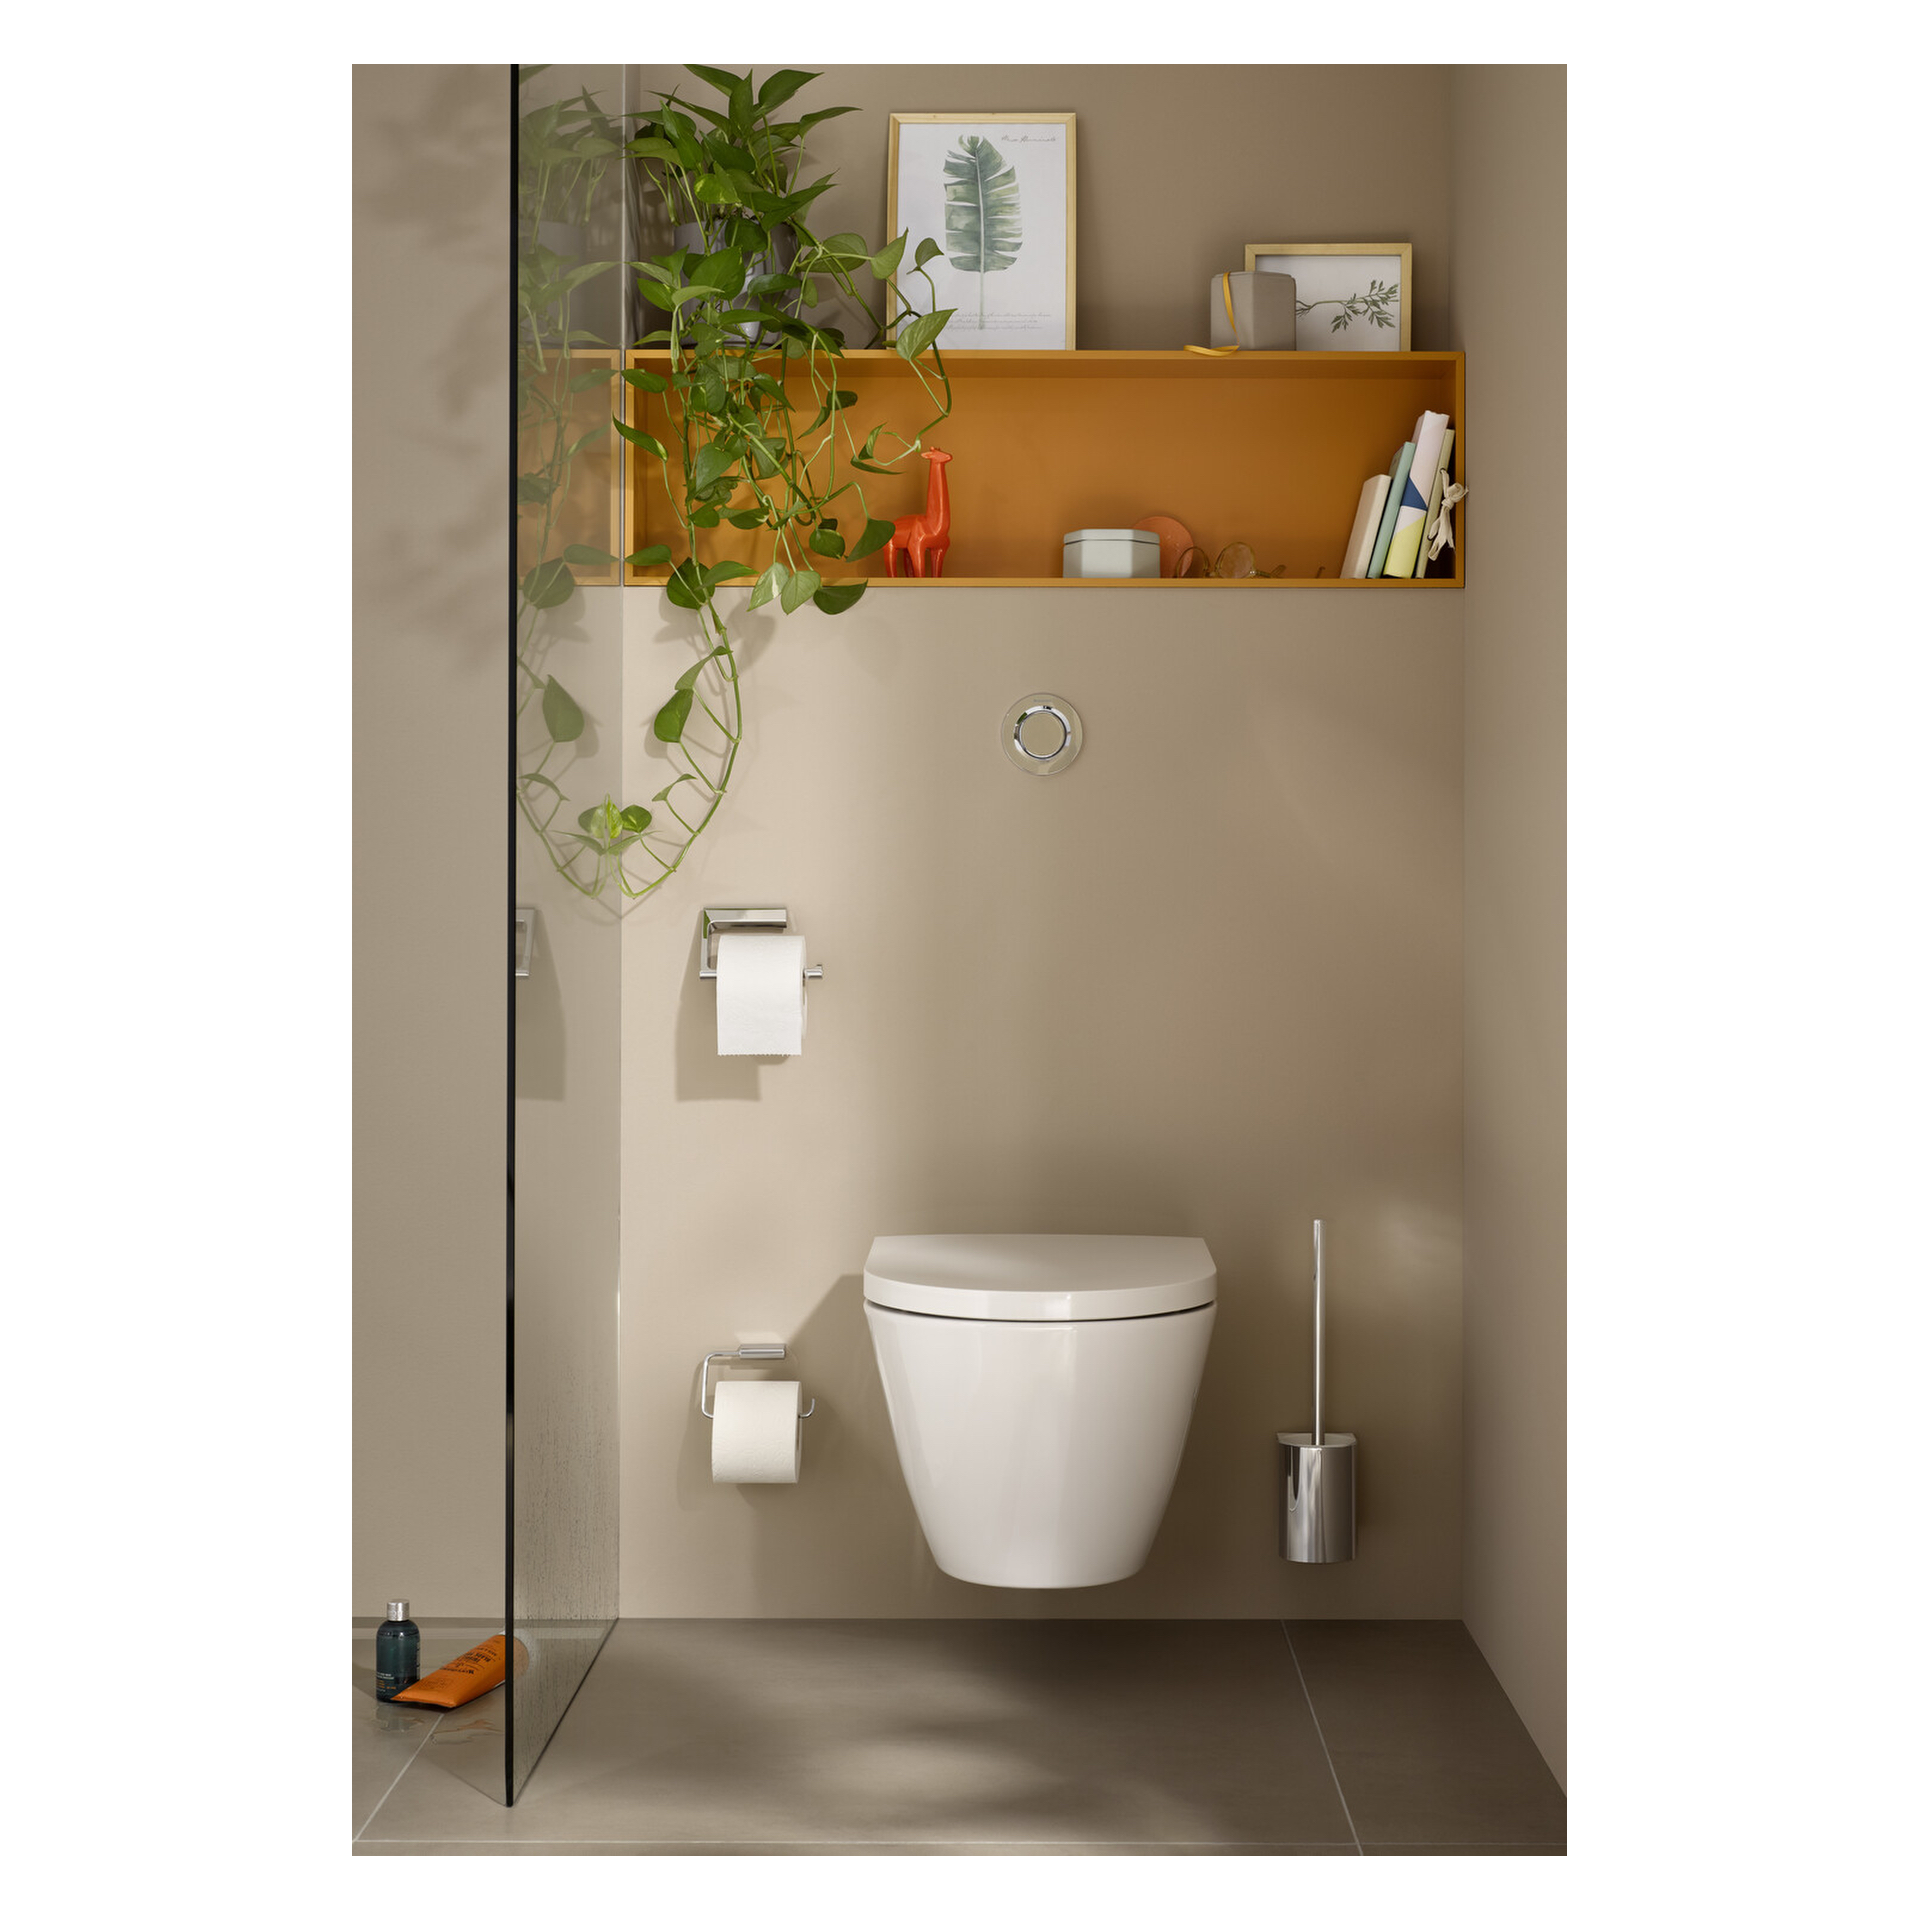 emco Toilettenbürstengarnitur „flow“ in chrom, Befestigung verdeckt